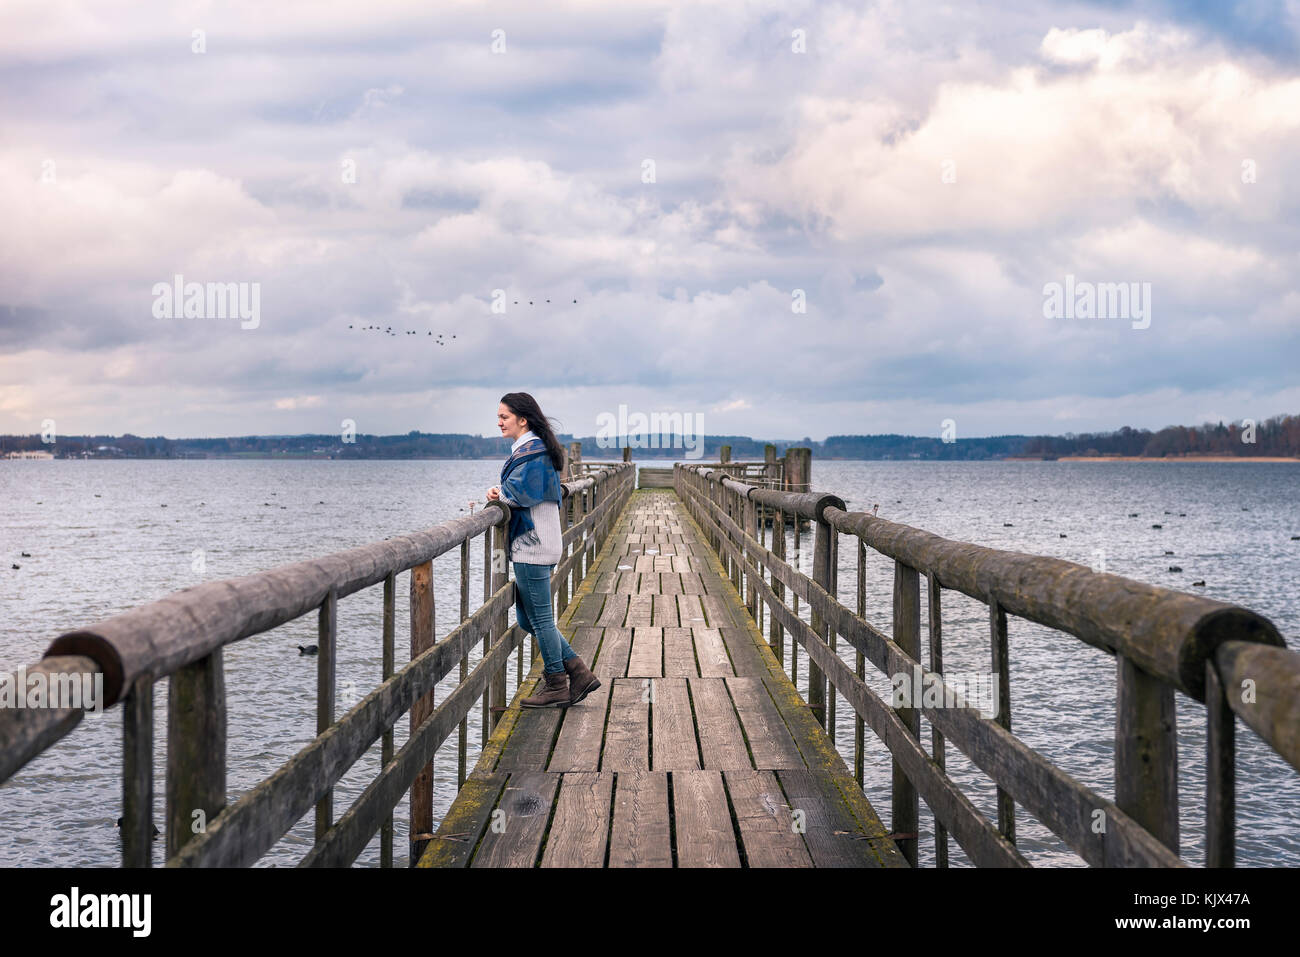 Destinazione romantica immagine a tema con una donna seduta da sola su un ponte rustico, sopra il famoso lago di Chiemsee in Baviera, Germania Foto Stock